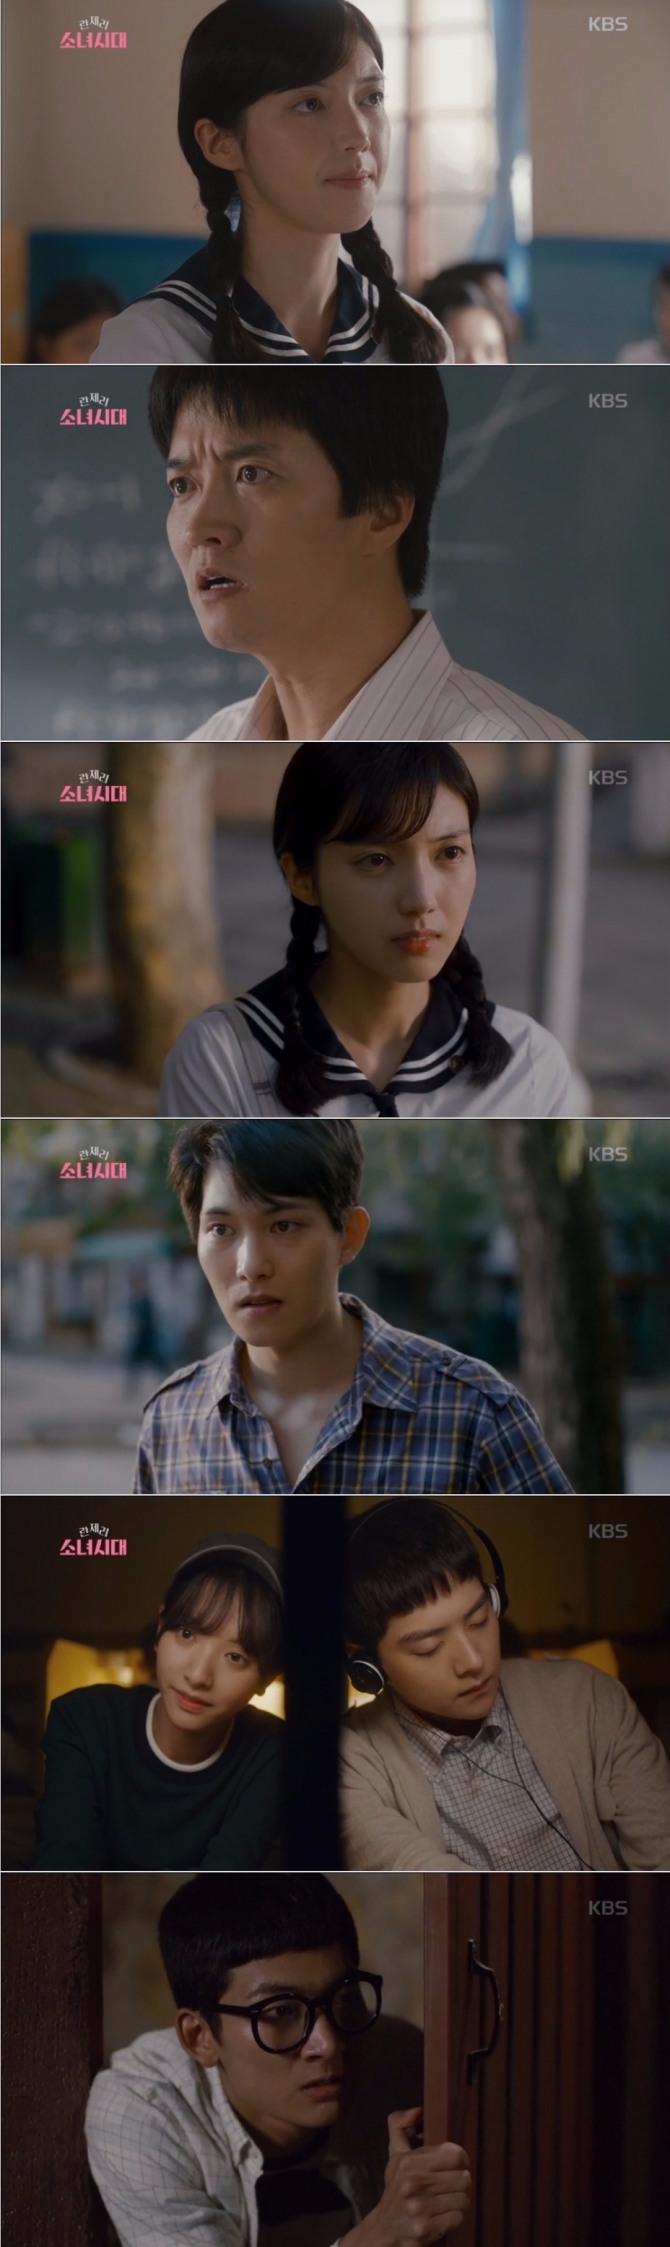 19일 방송된 KBS2TV 월화드라마 '란제리 소녀시대' 4회에서는 박혜주(채서진)와 정희(보나)의 러브 라인이 한 겹 더 벗겨지며 시청자들의 몰입도를 높였다. 사진=KBS 방송 캡처